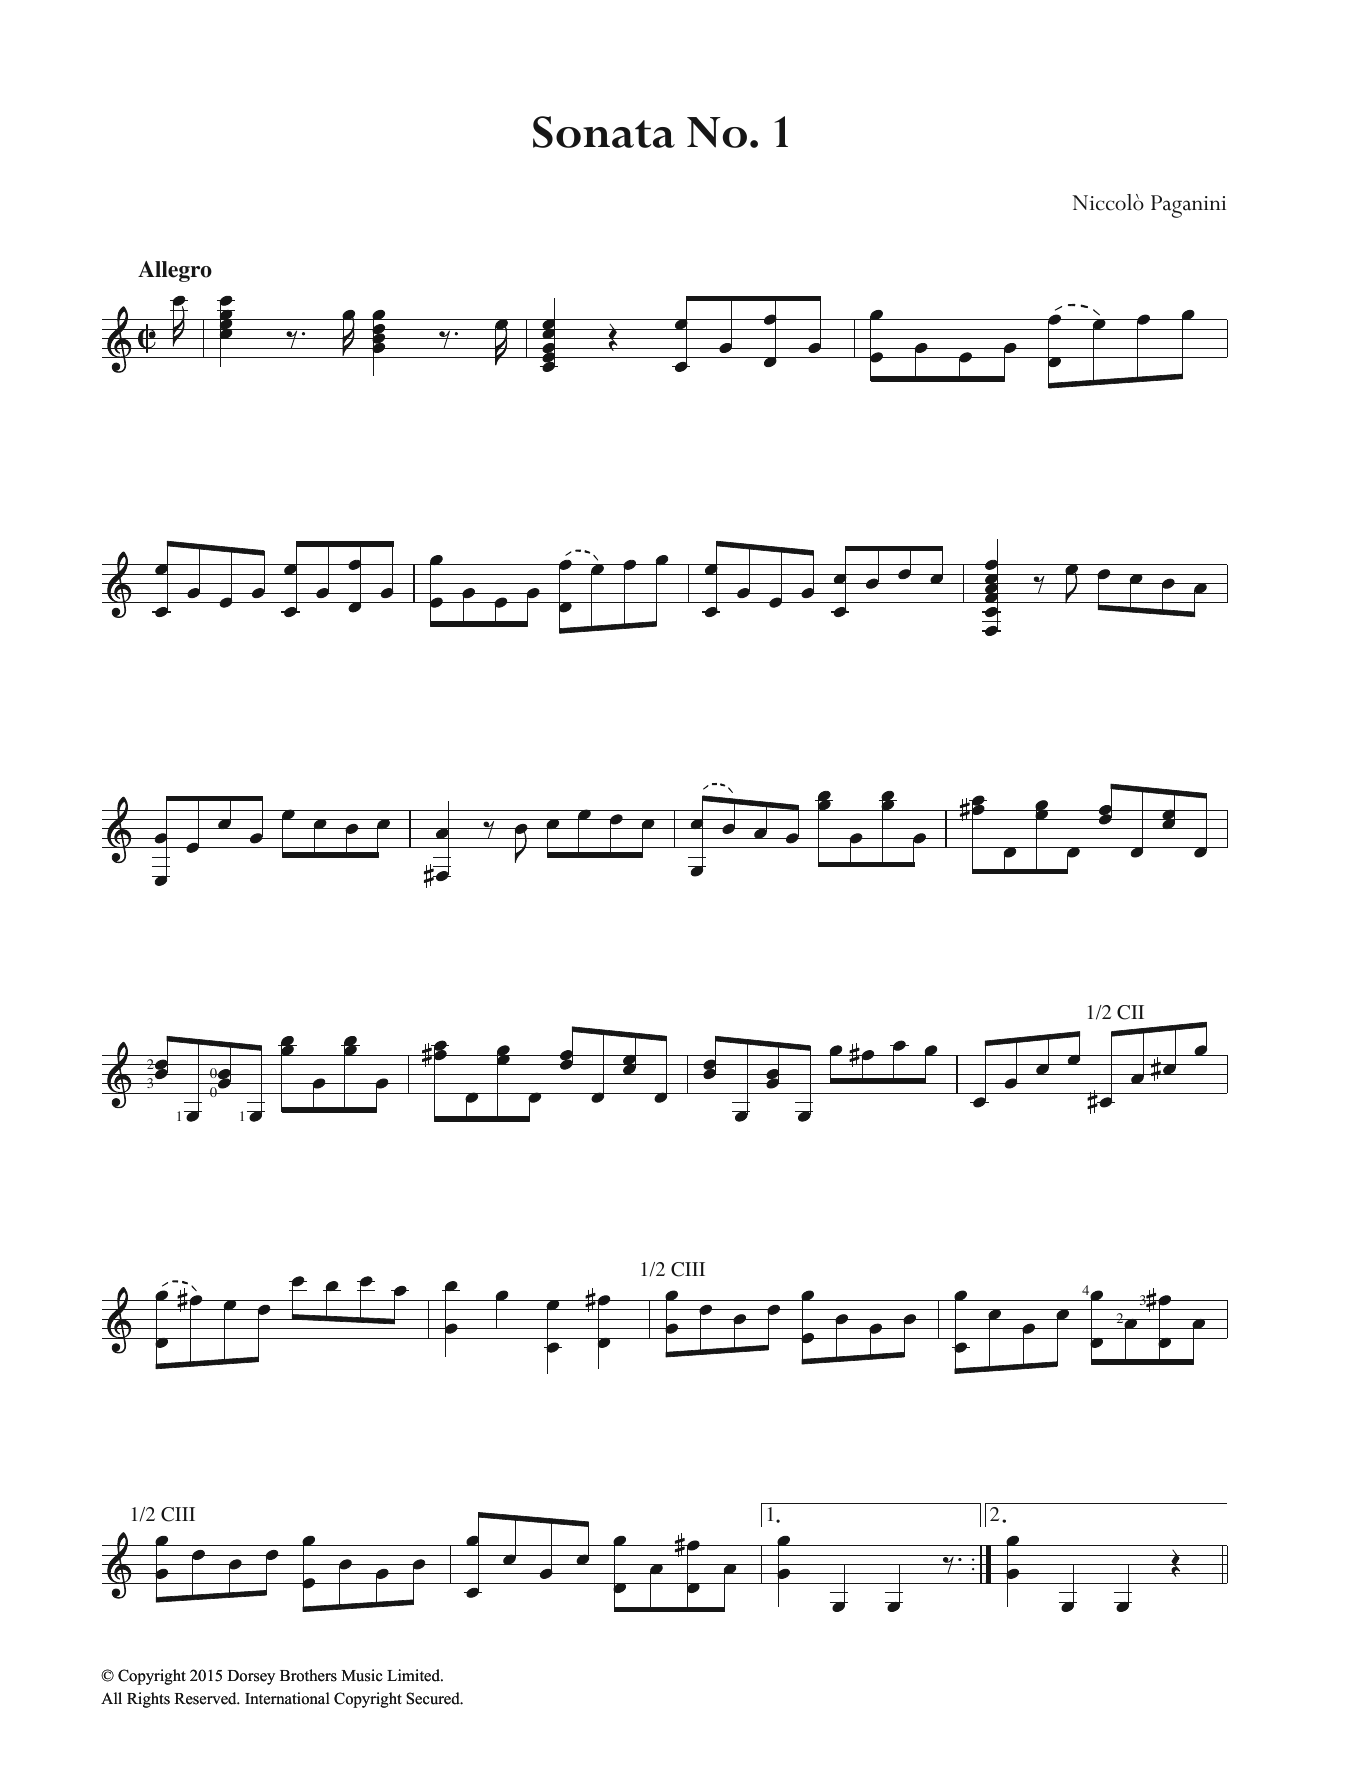 Niccolo Paganini Sonata No. 1 Sheet Music Notes & Chords for Guitar - Download or Print PDF